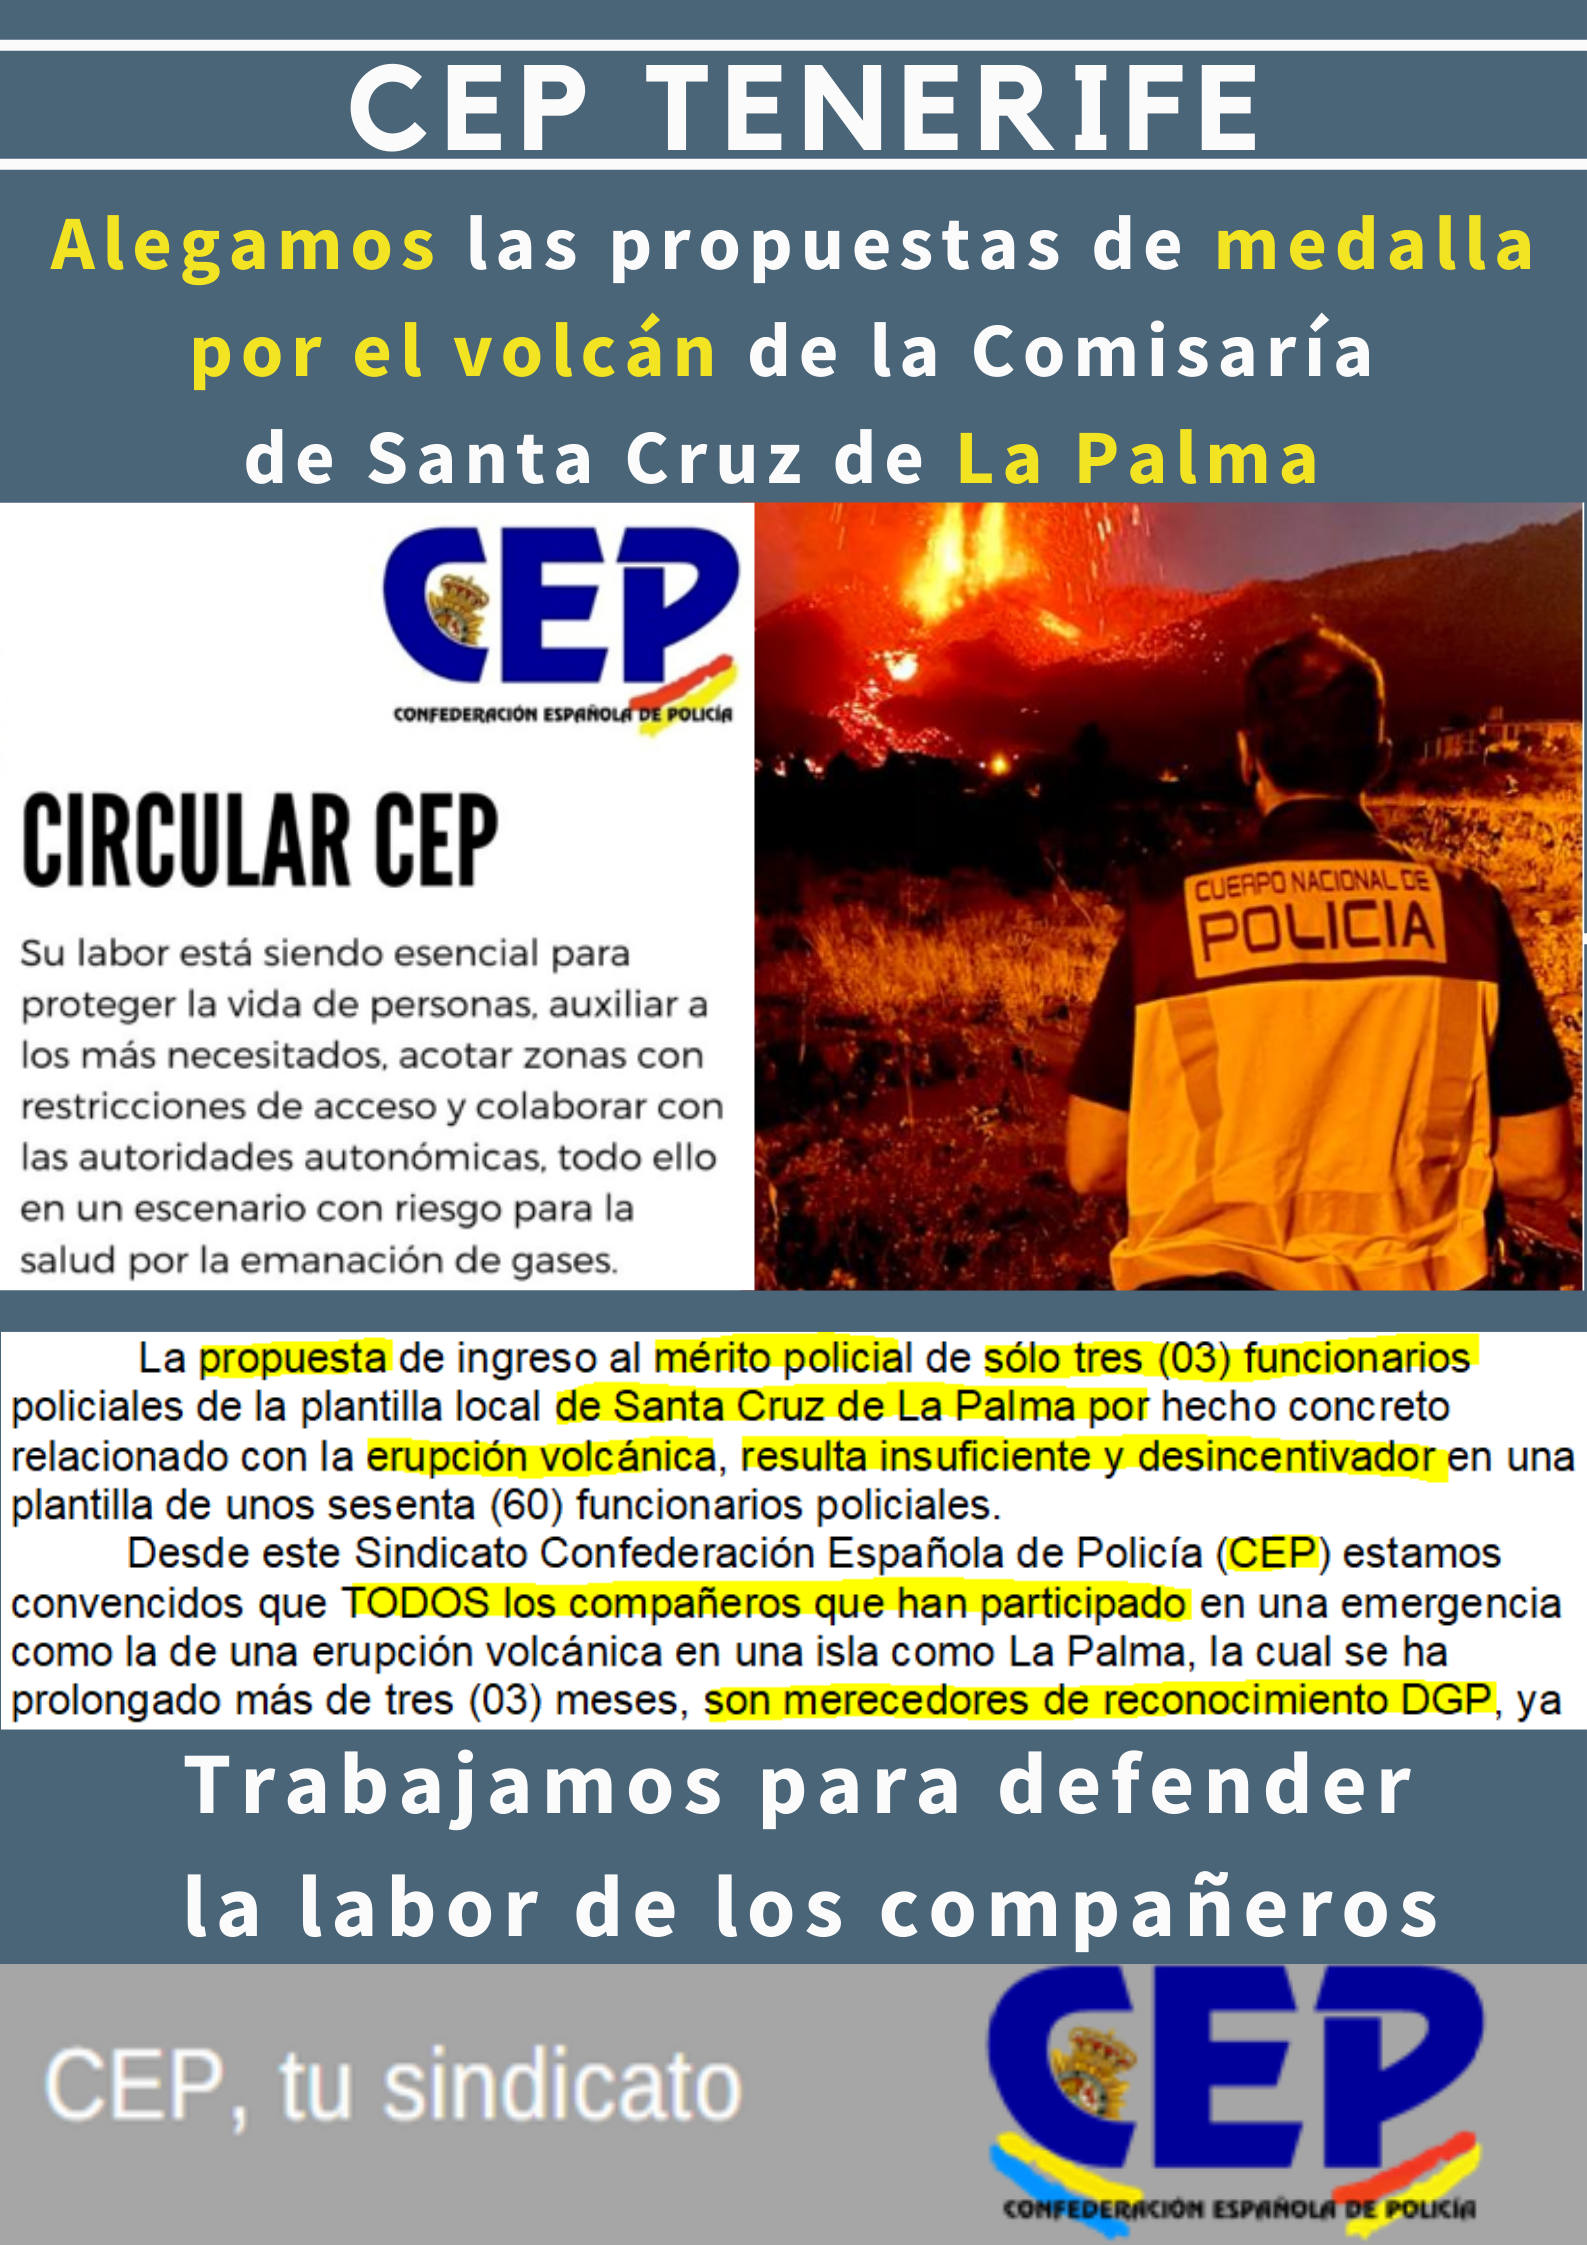 Alegamos propuesta medalla por volcán de Jefe Comisaría S/C La Palma. Sólo tres funcionarios policiales, insuficiente y desmotivador